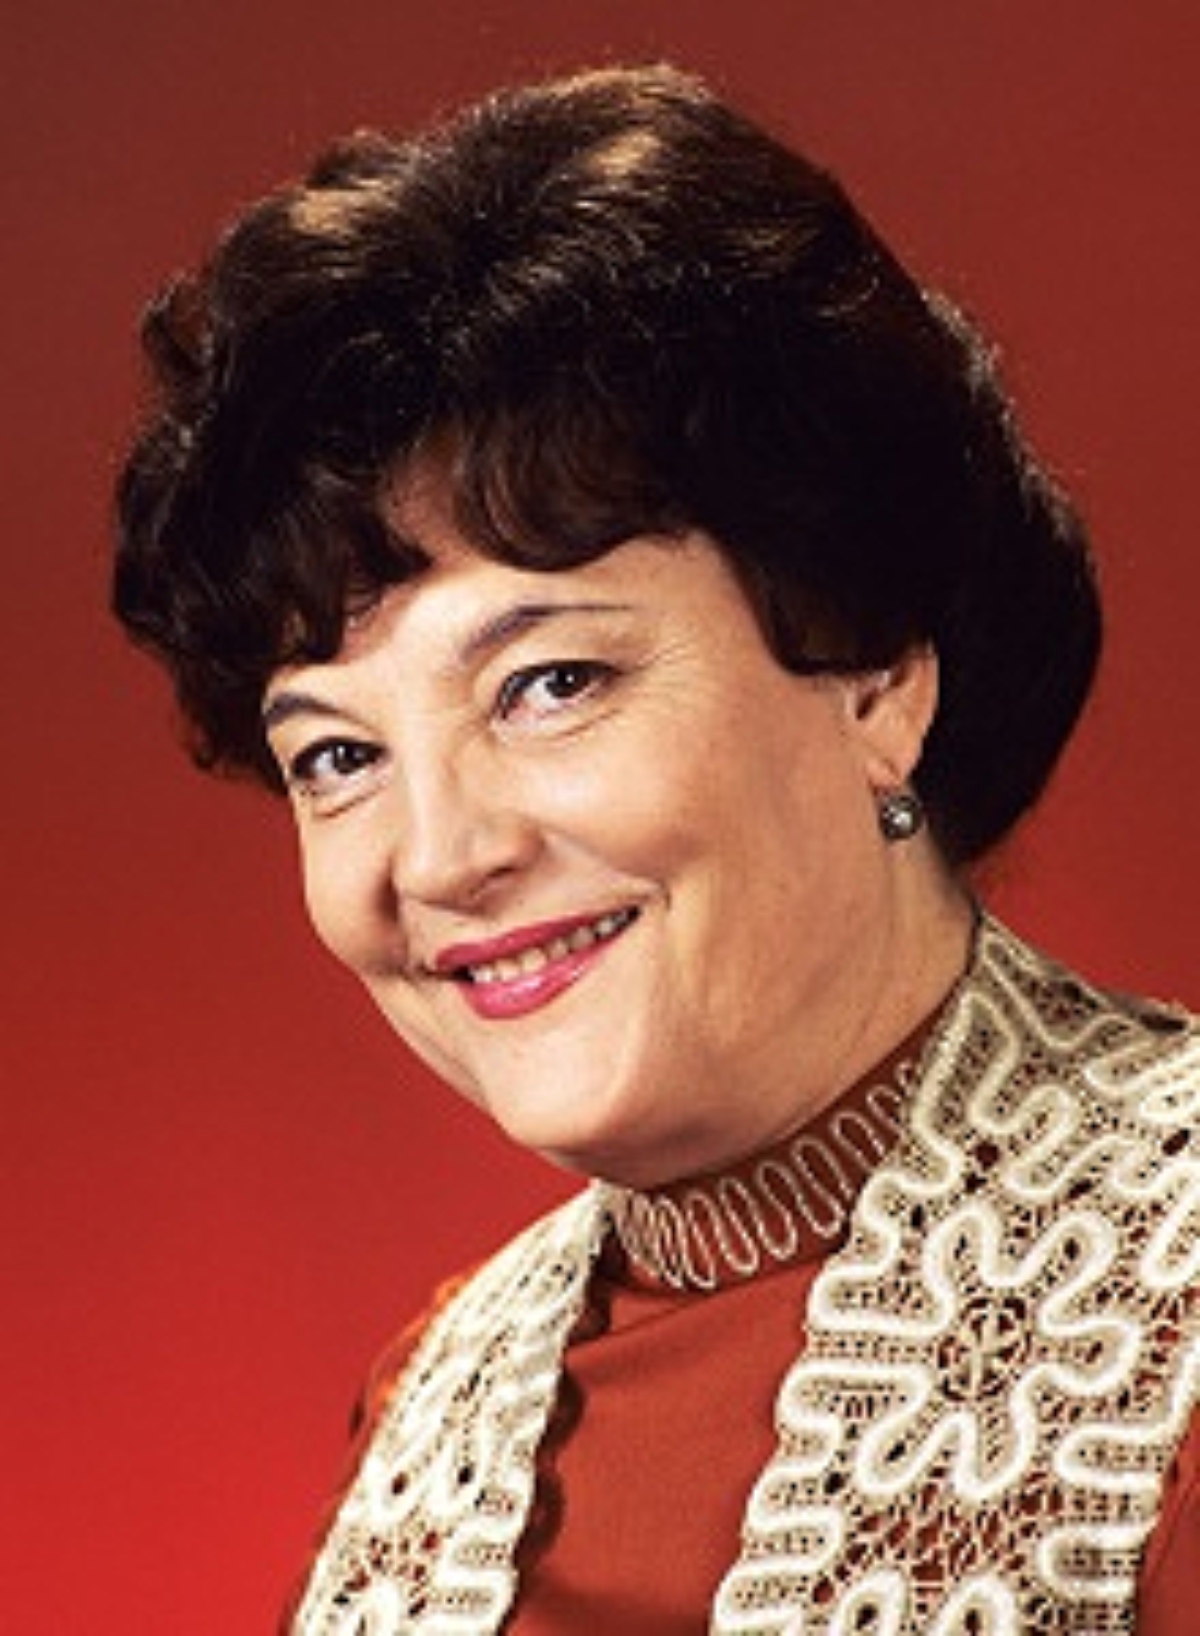 Olga Voronets